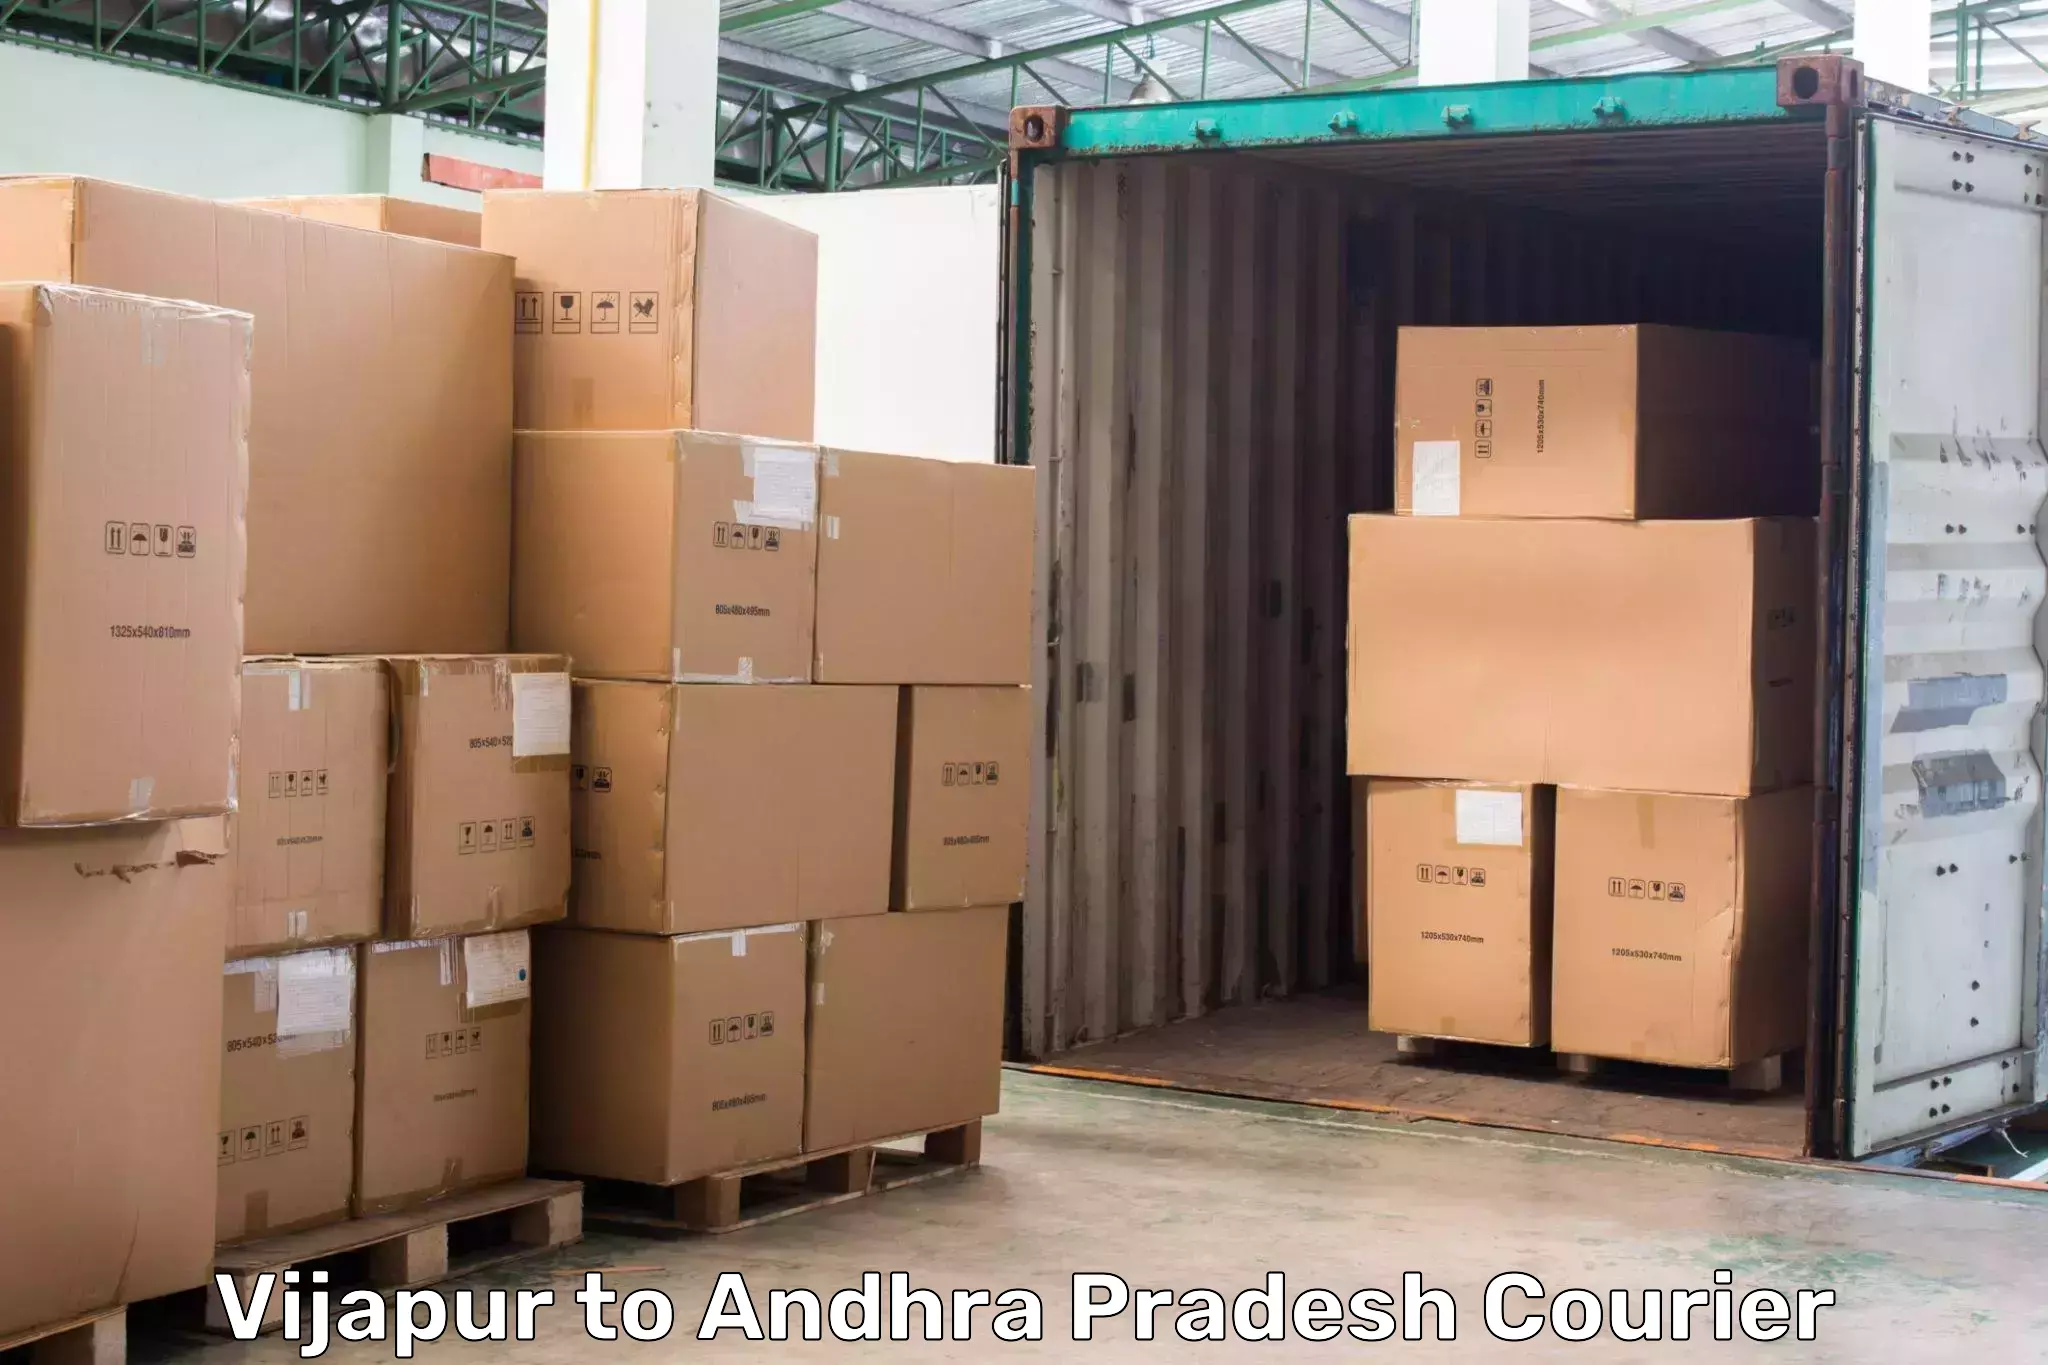 Cost-effective courier options in Vijapur to IIIT Chittoor